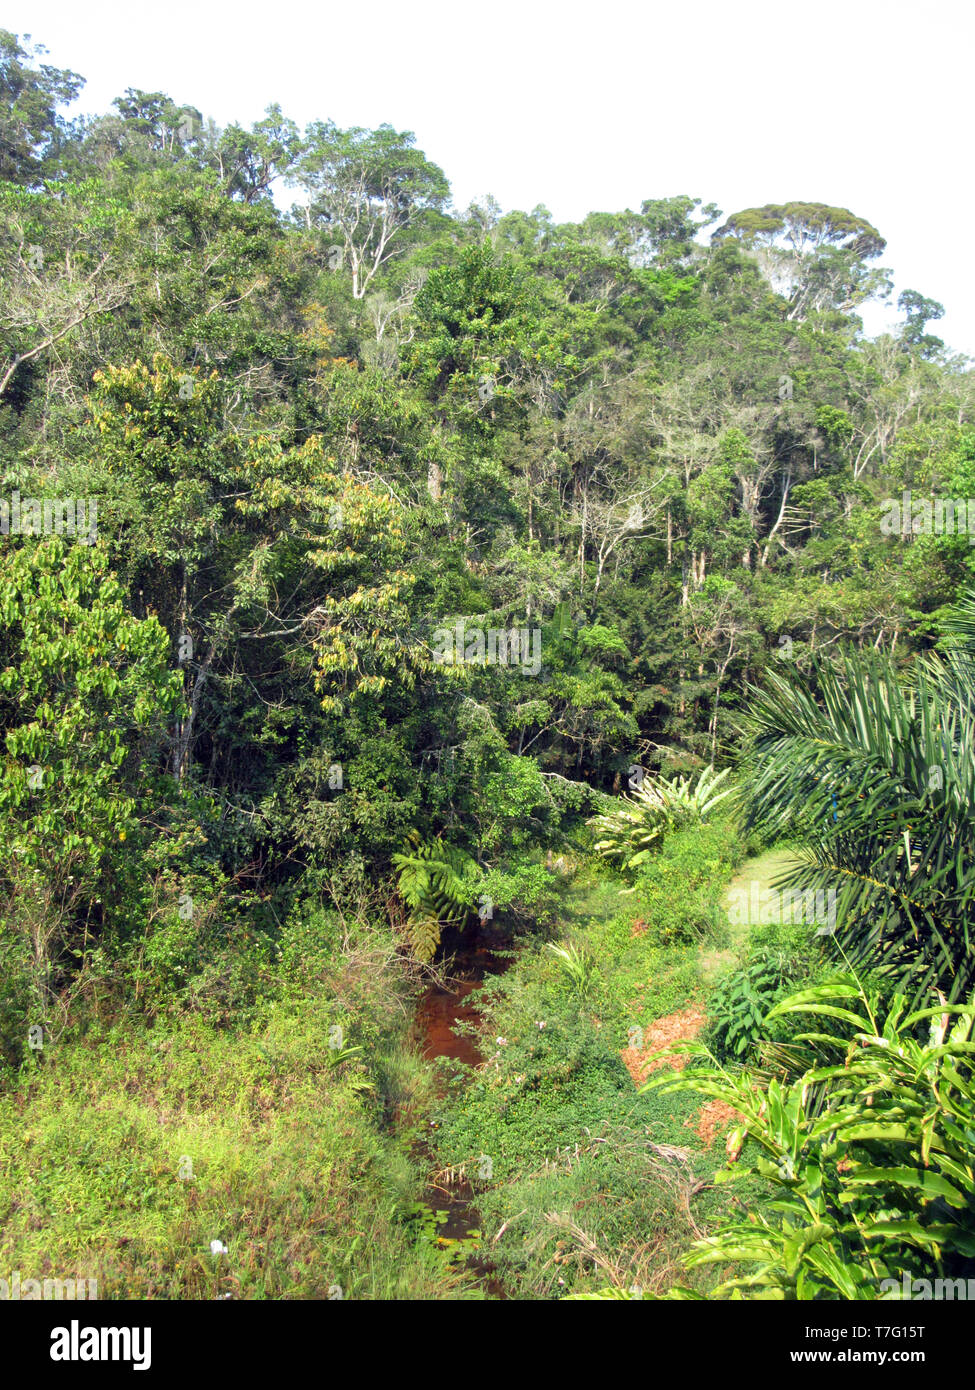 Üppigen Regenwald in Analamazoatra finden (auch bekannt als Perinet), Teil von Andasibe-Mantadia Nationalpark in Madagaskar. Stockfoto